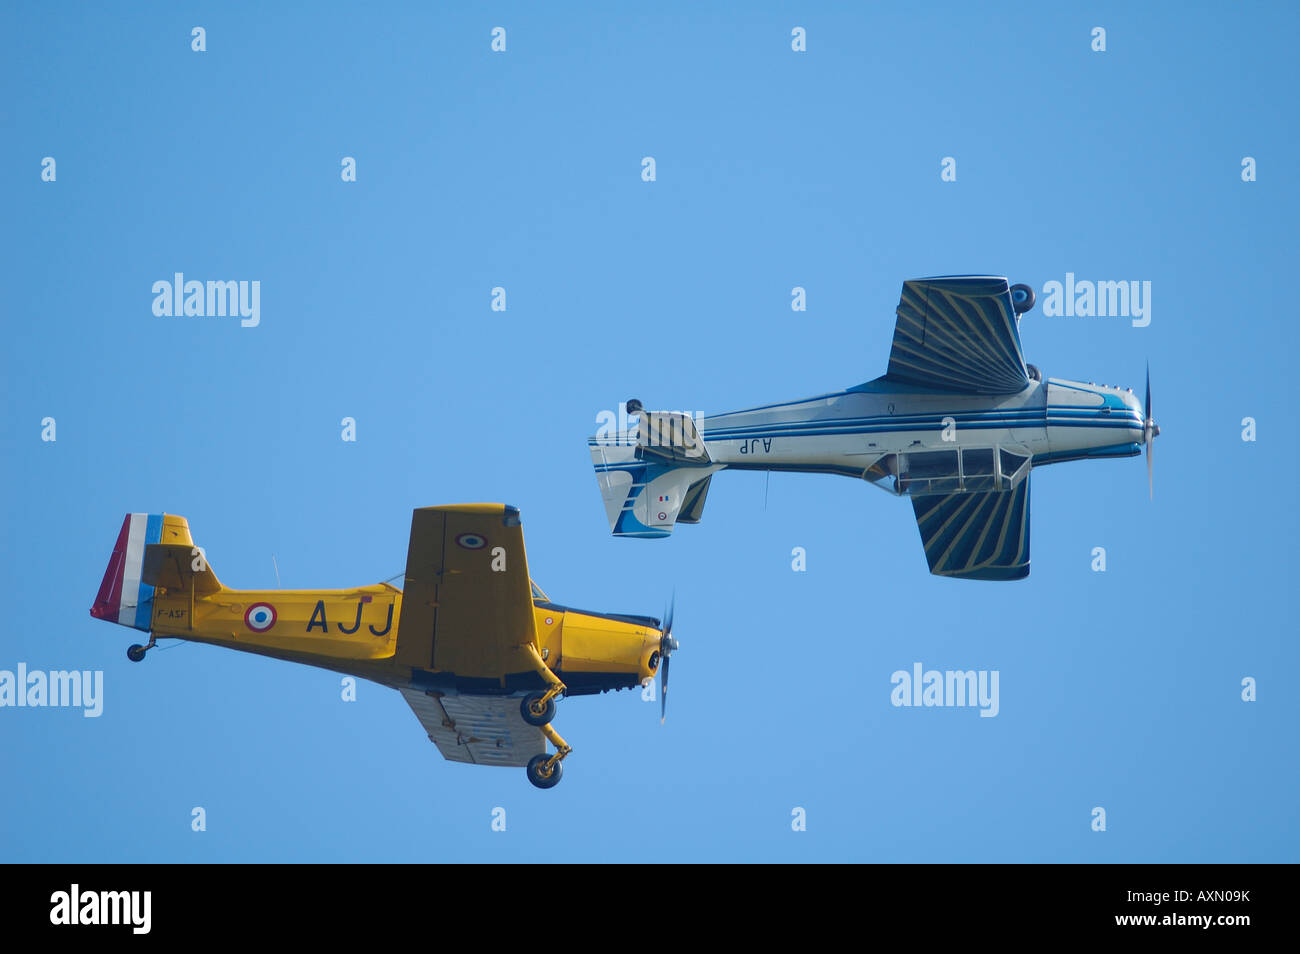 L'équipe de vol inversé deux vieux avions Nord 3202, french vintage air show, la Ferté Alais, France Banque D'Images